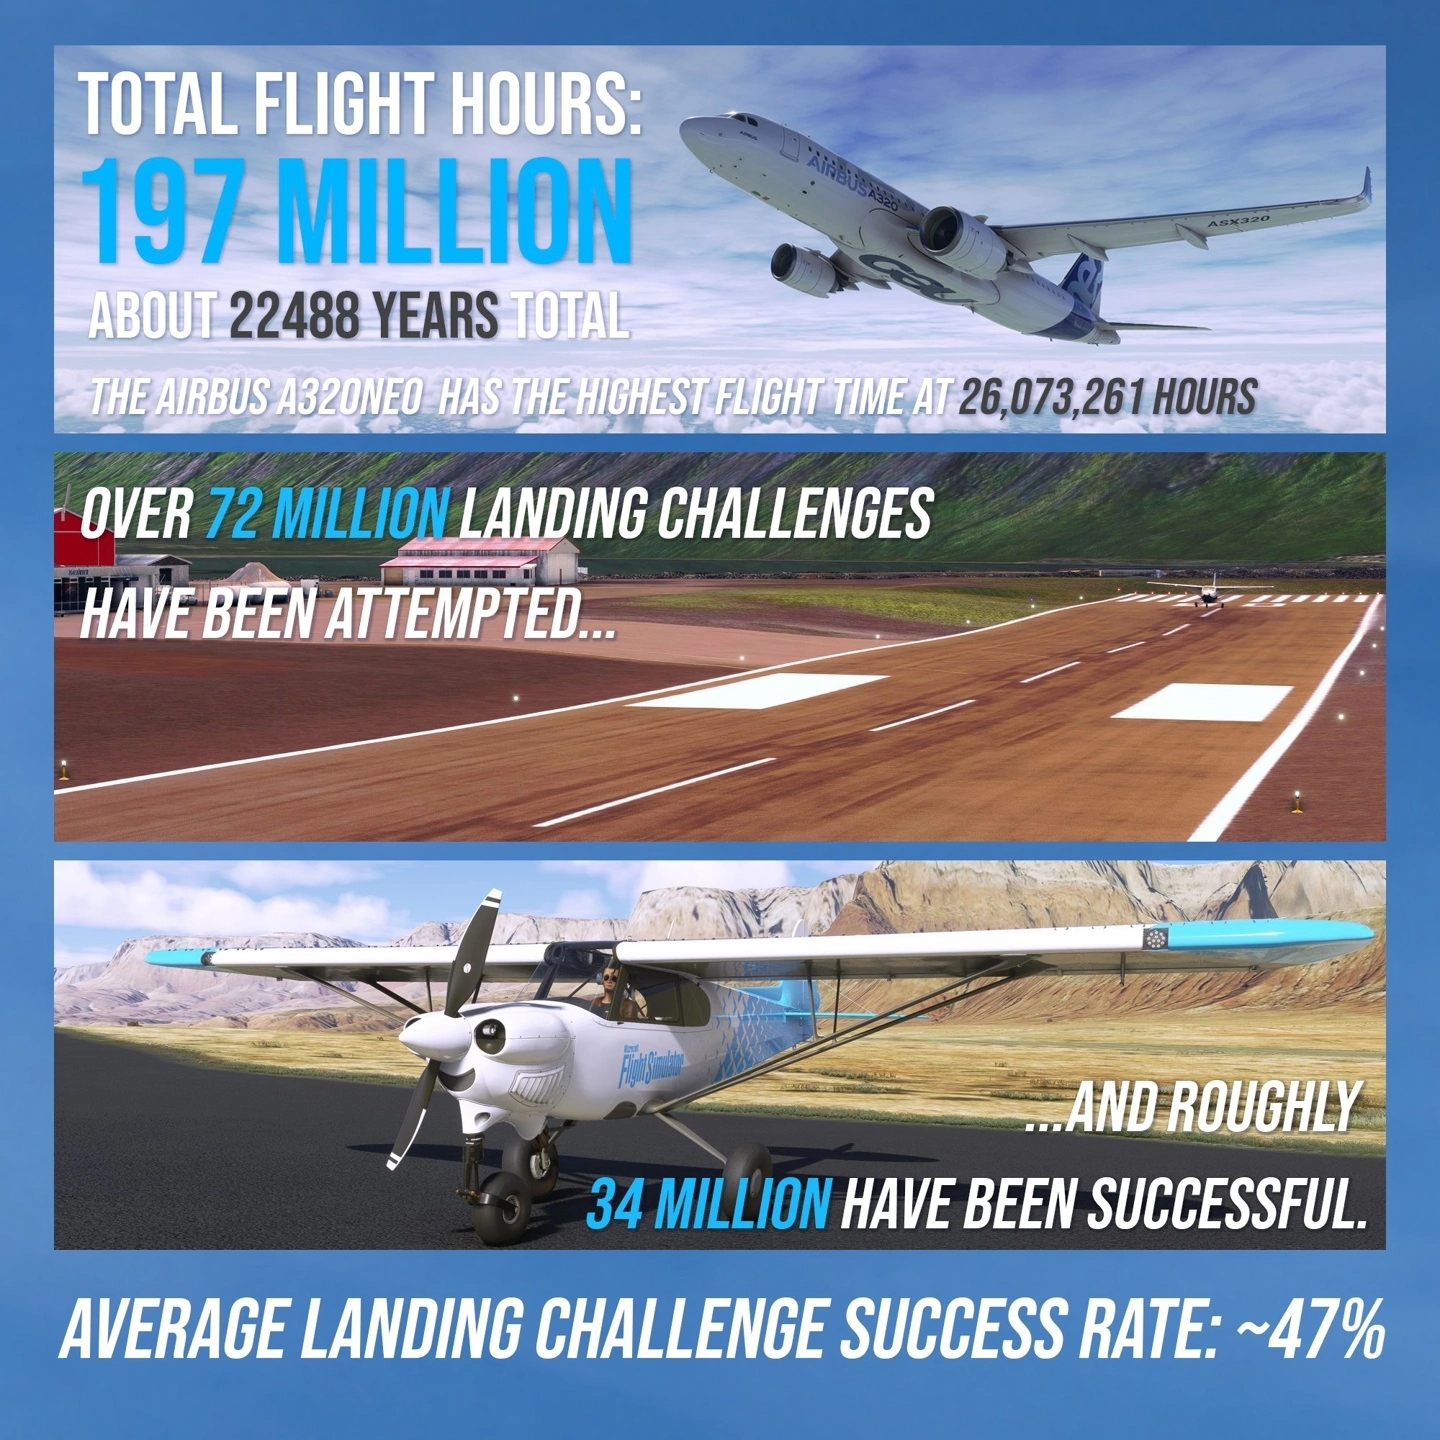 《微軟飛行模擬》3周年官方曬數據  Cessna 152最火